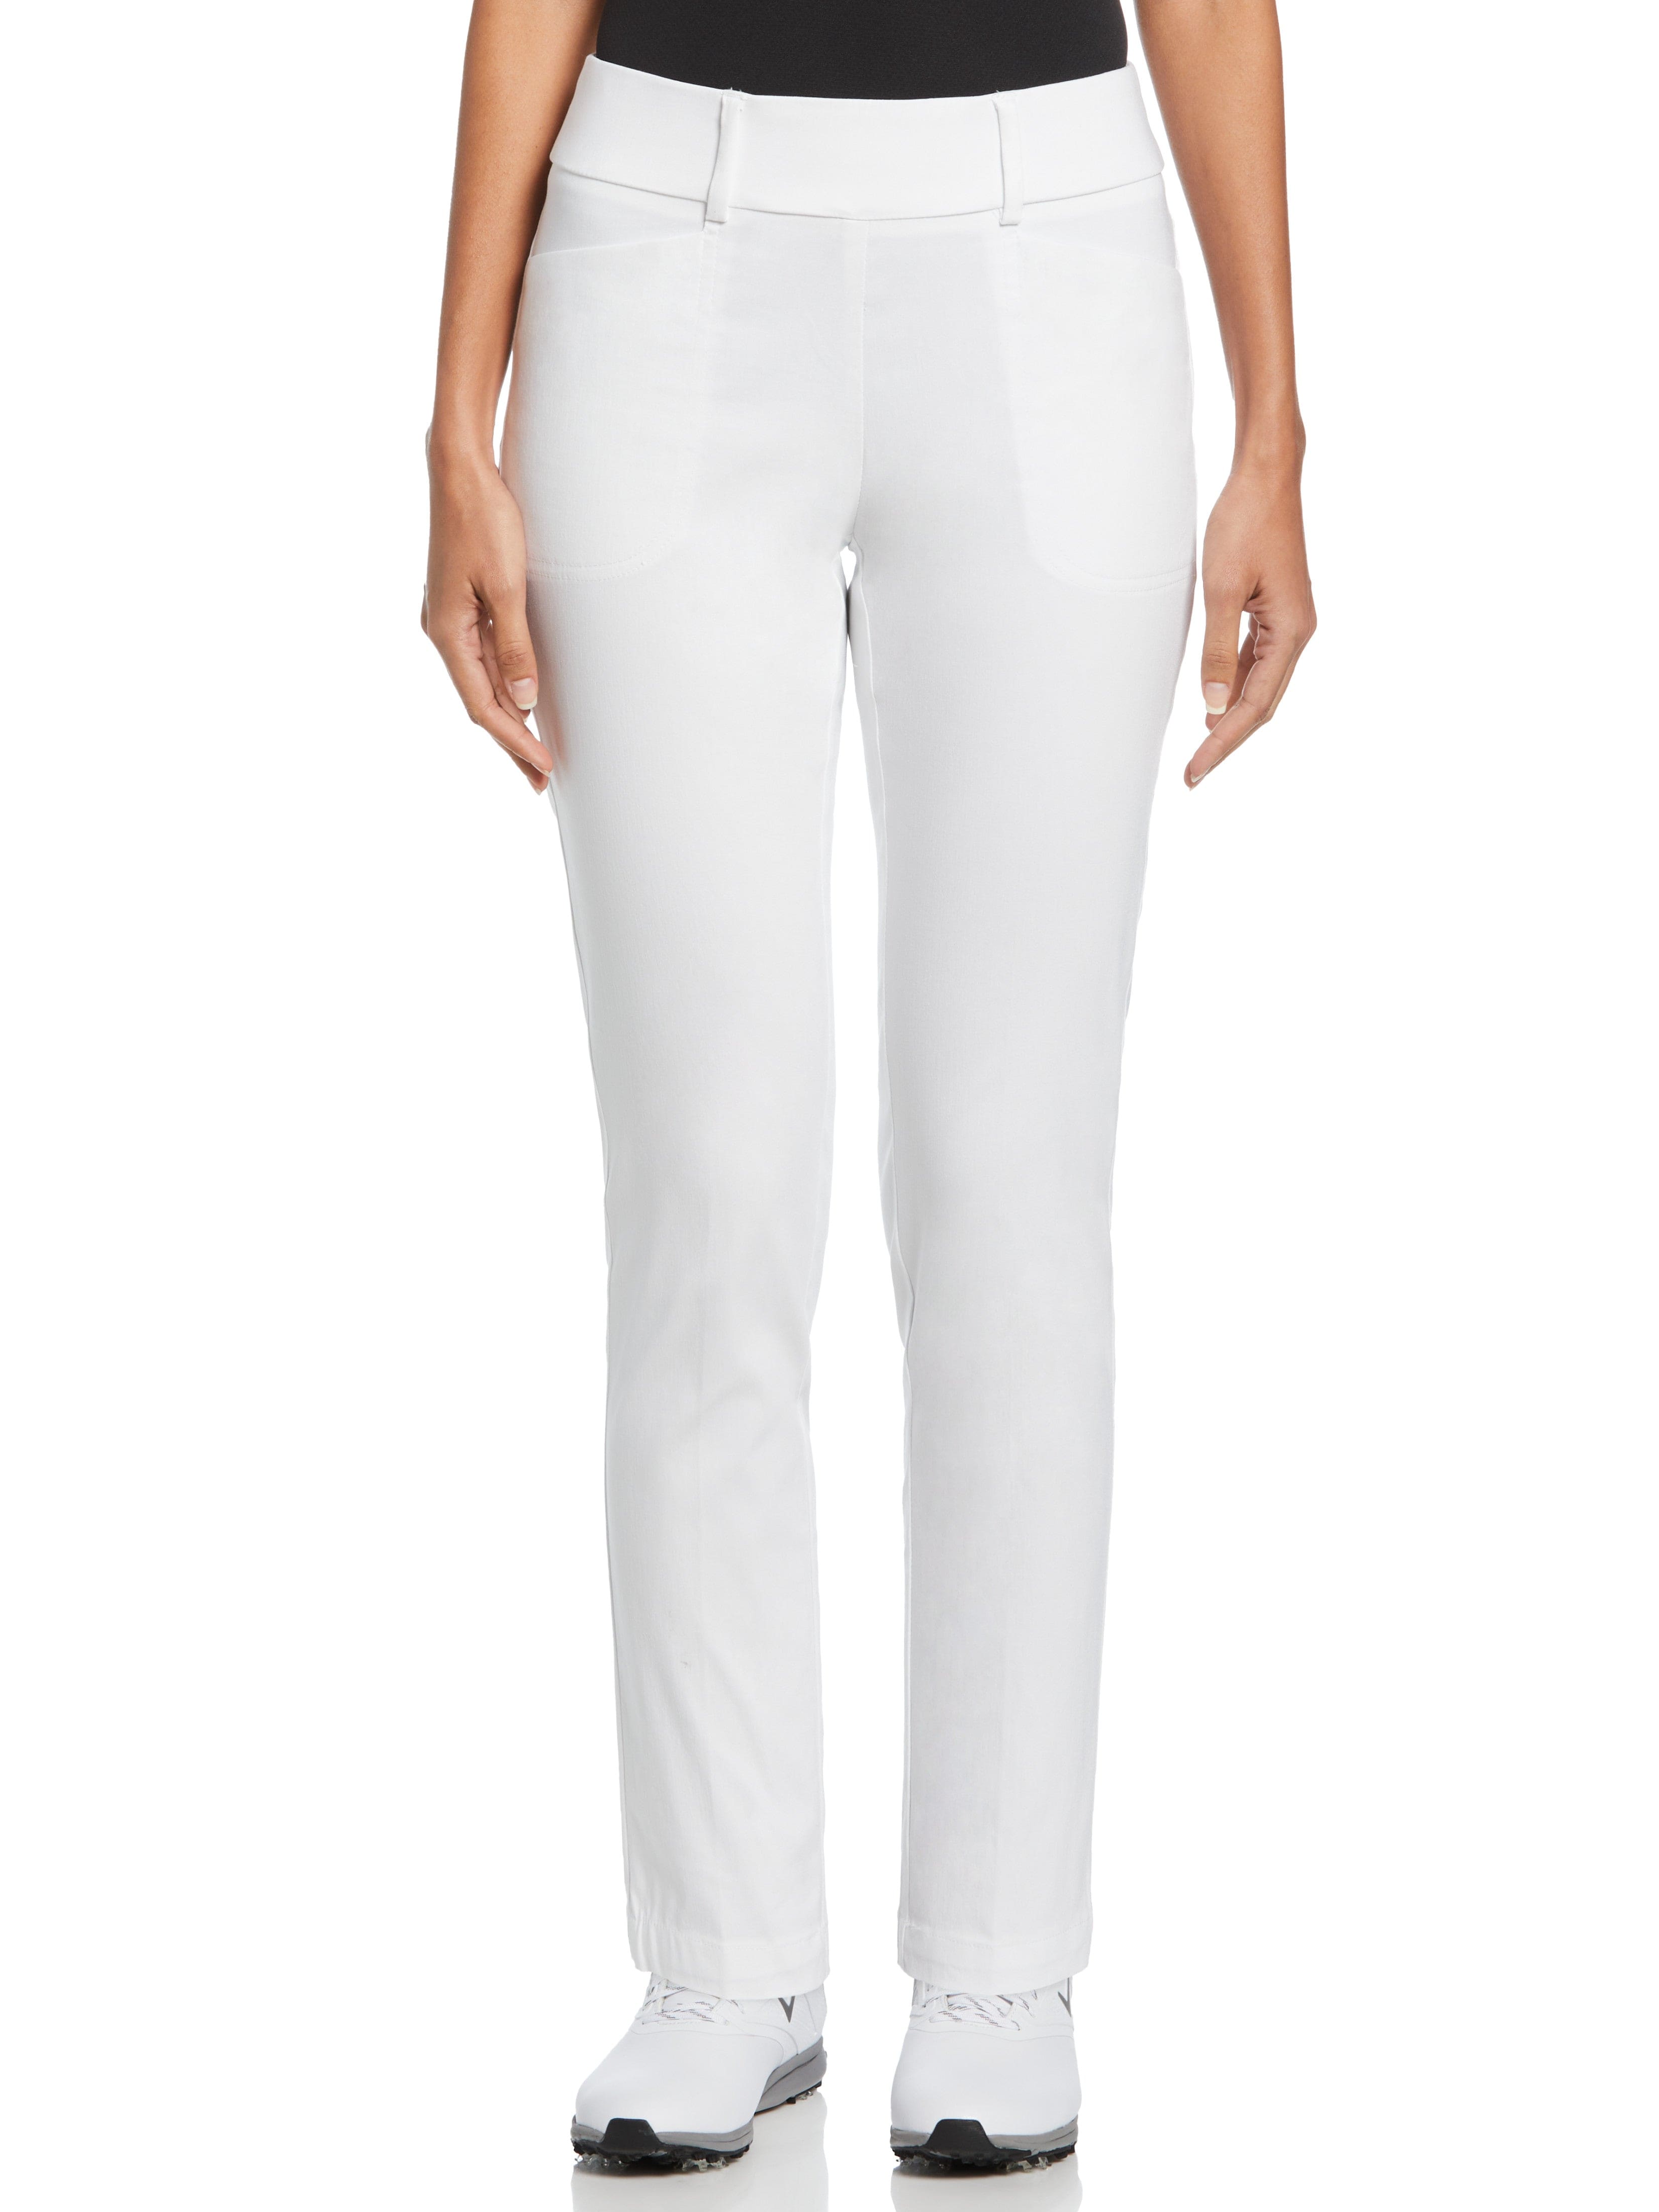 Women's Navy Blue Golf Pants High Waist XXS-XXL – INDRA Sportswear